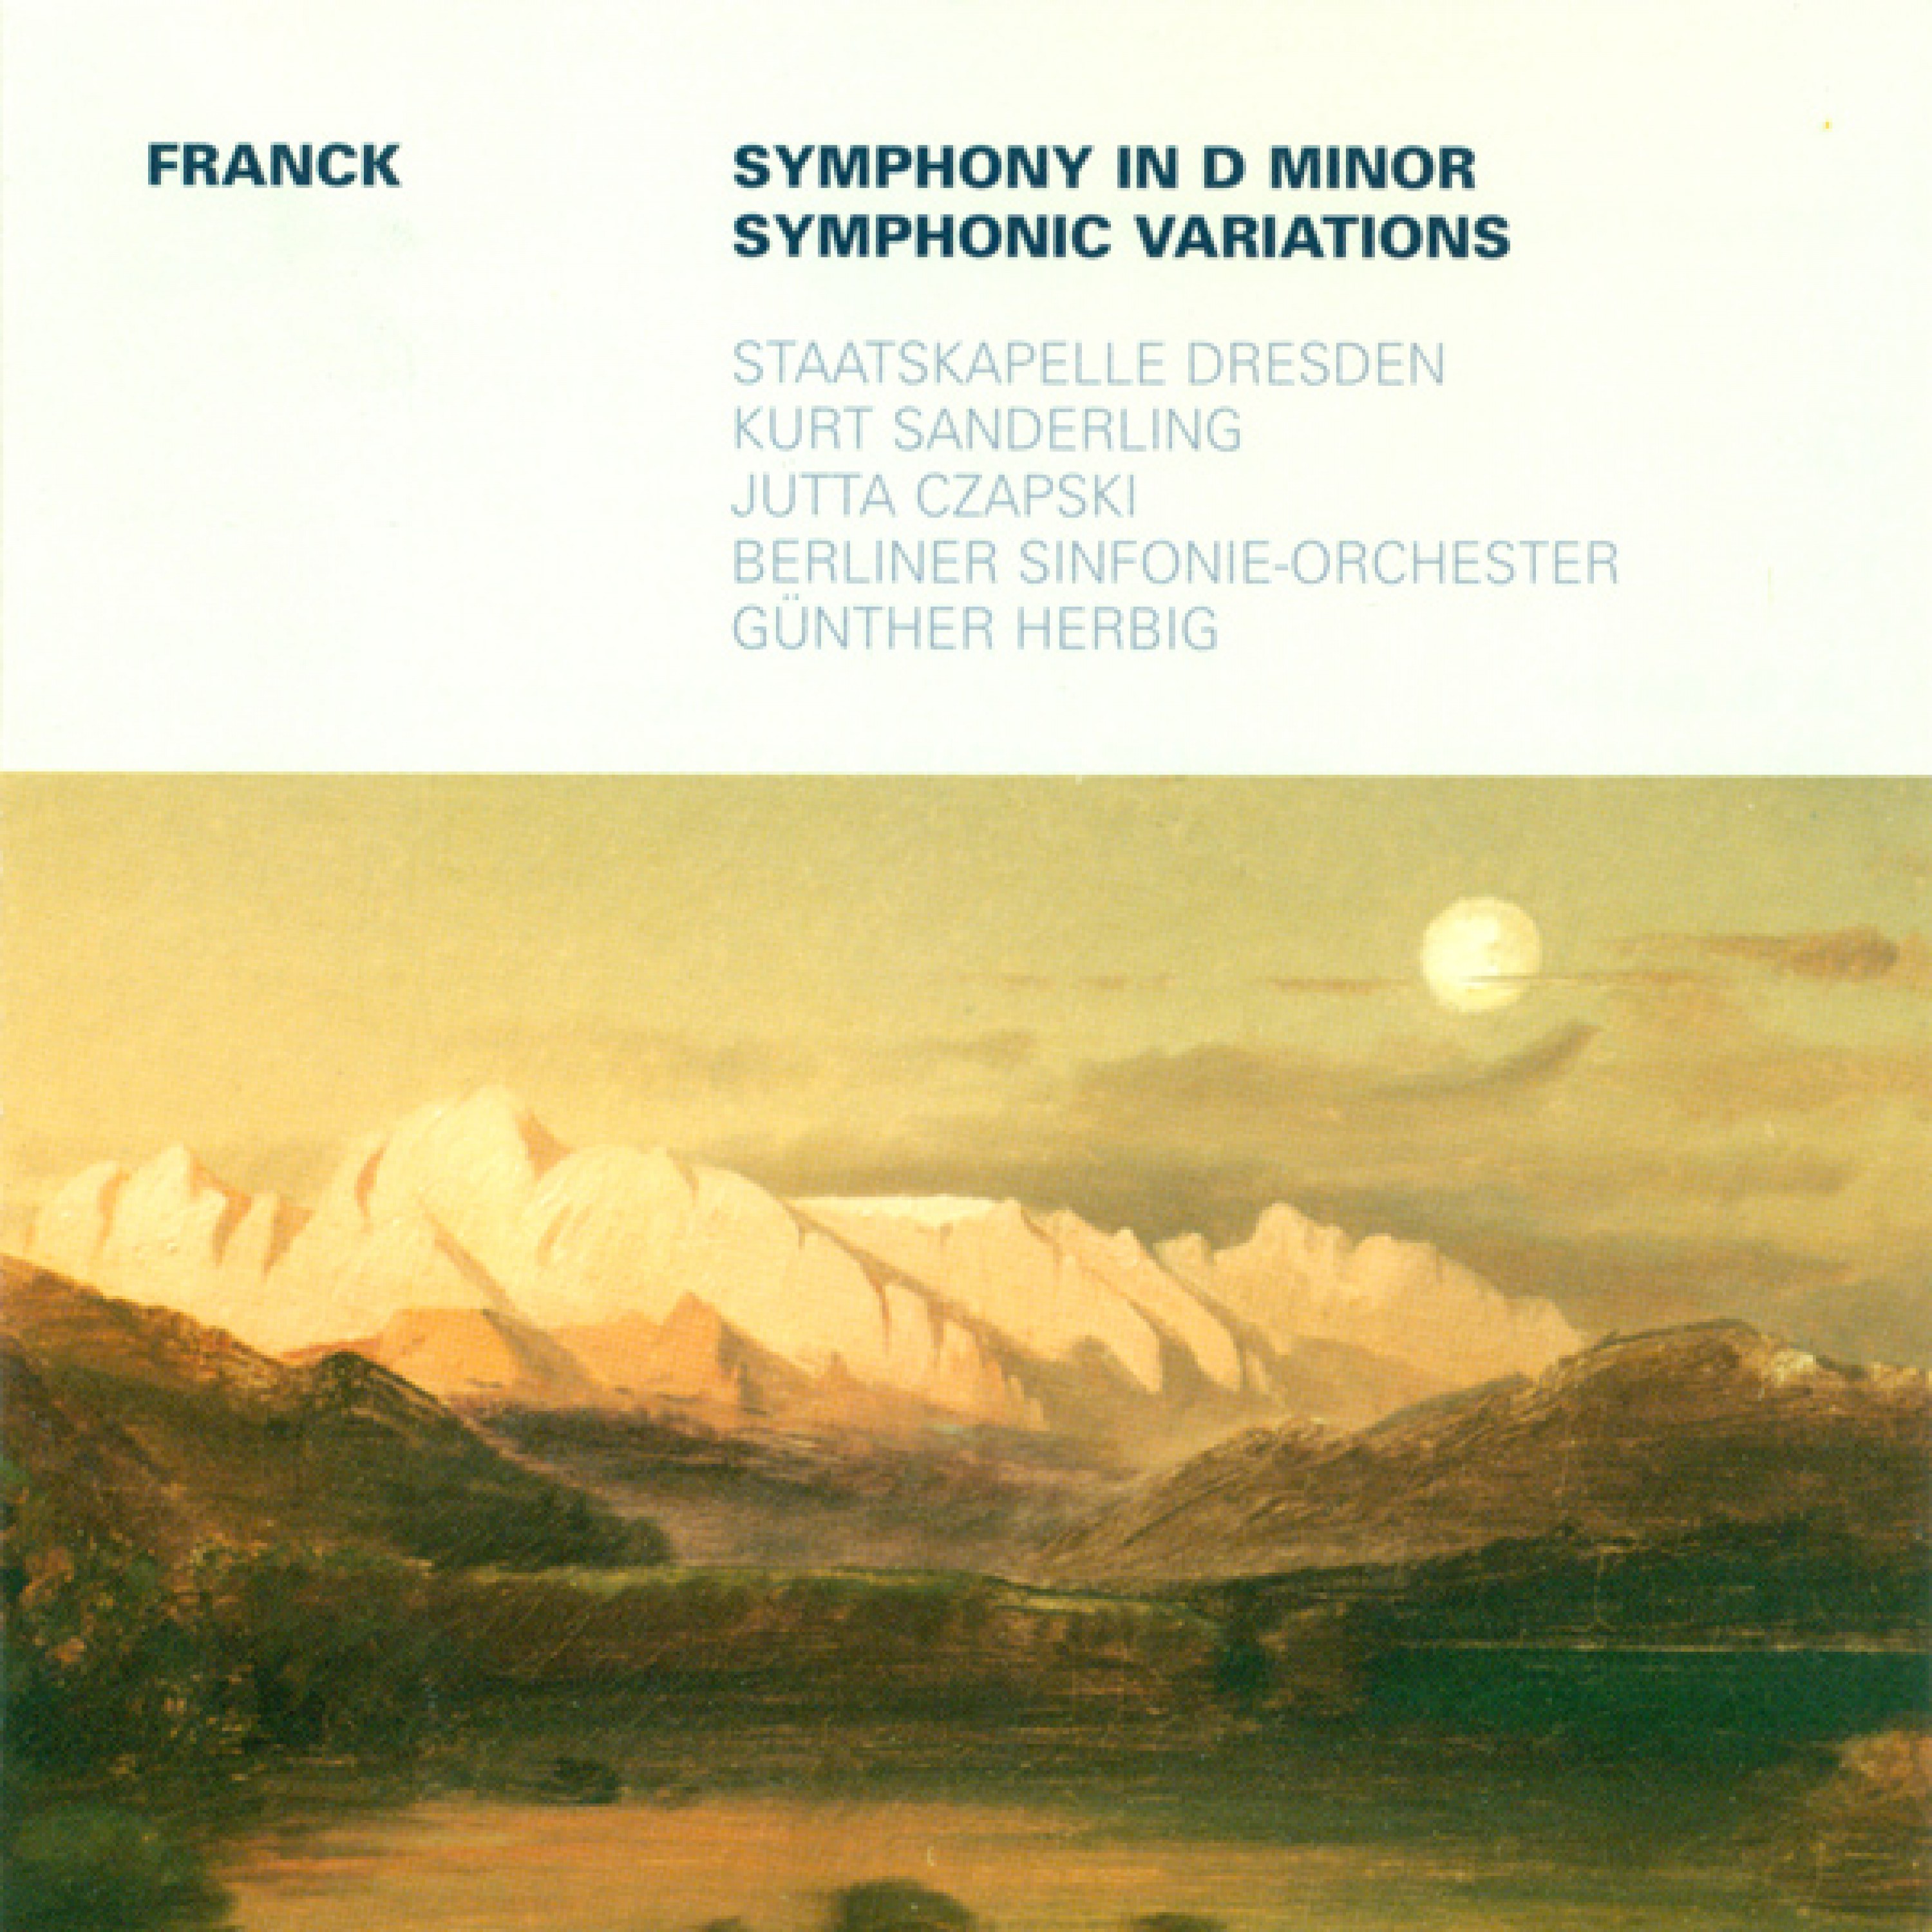 Symphony in D Minor: I. Lento - Allegro non troppo